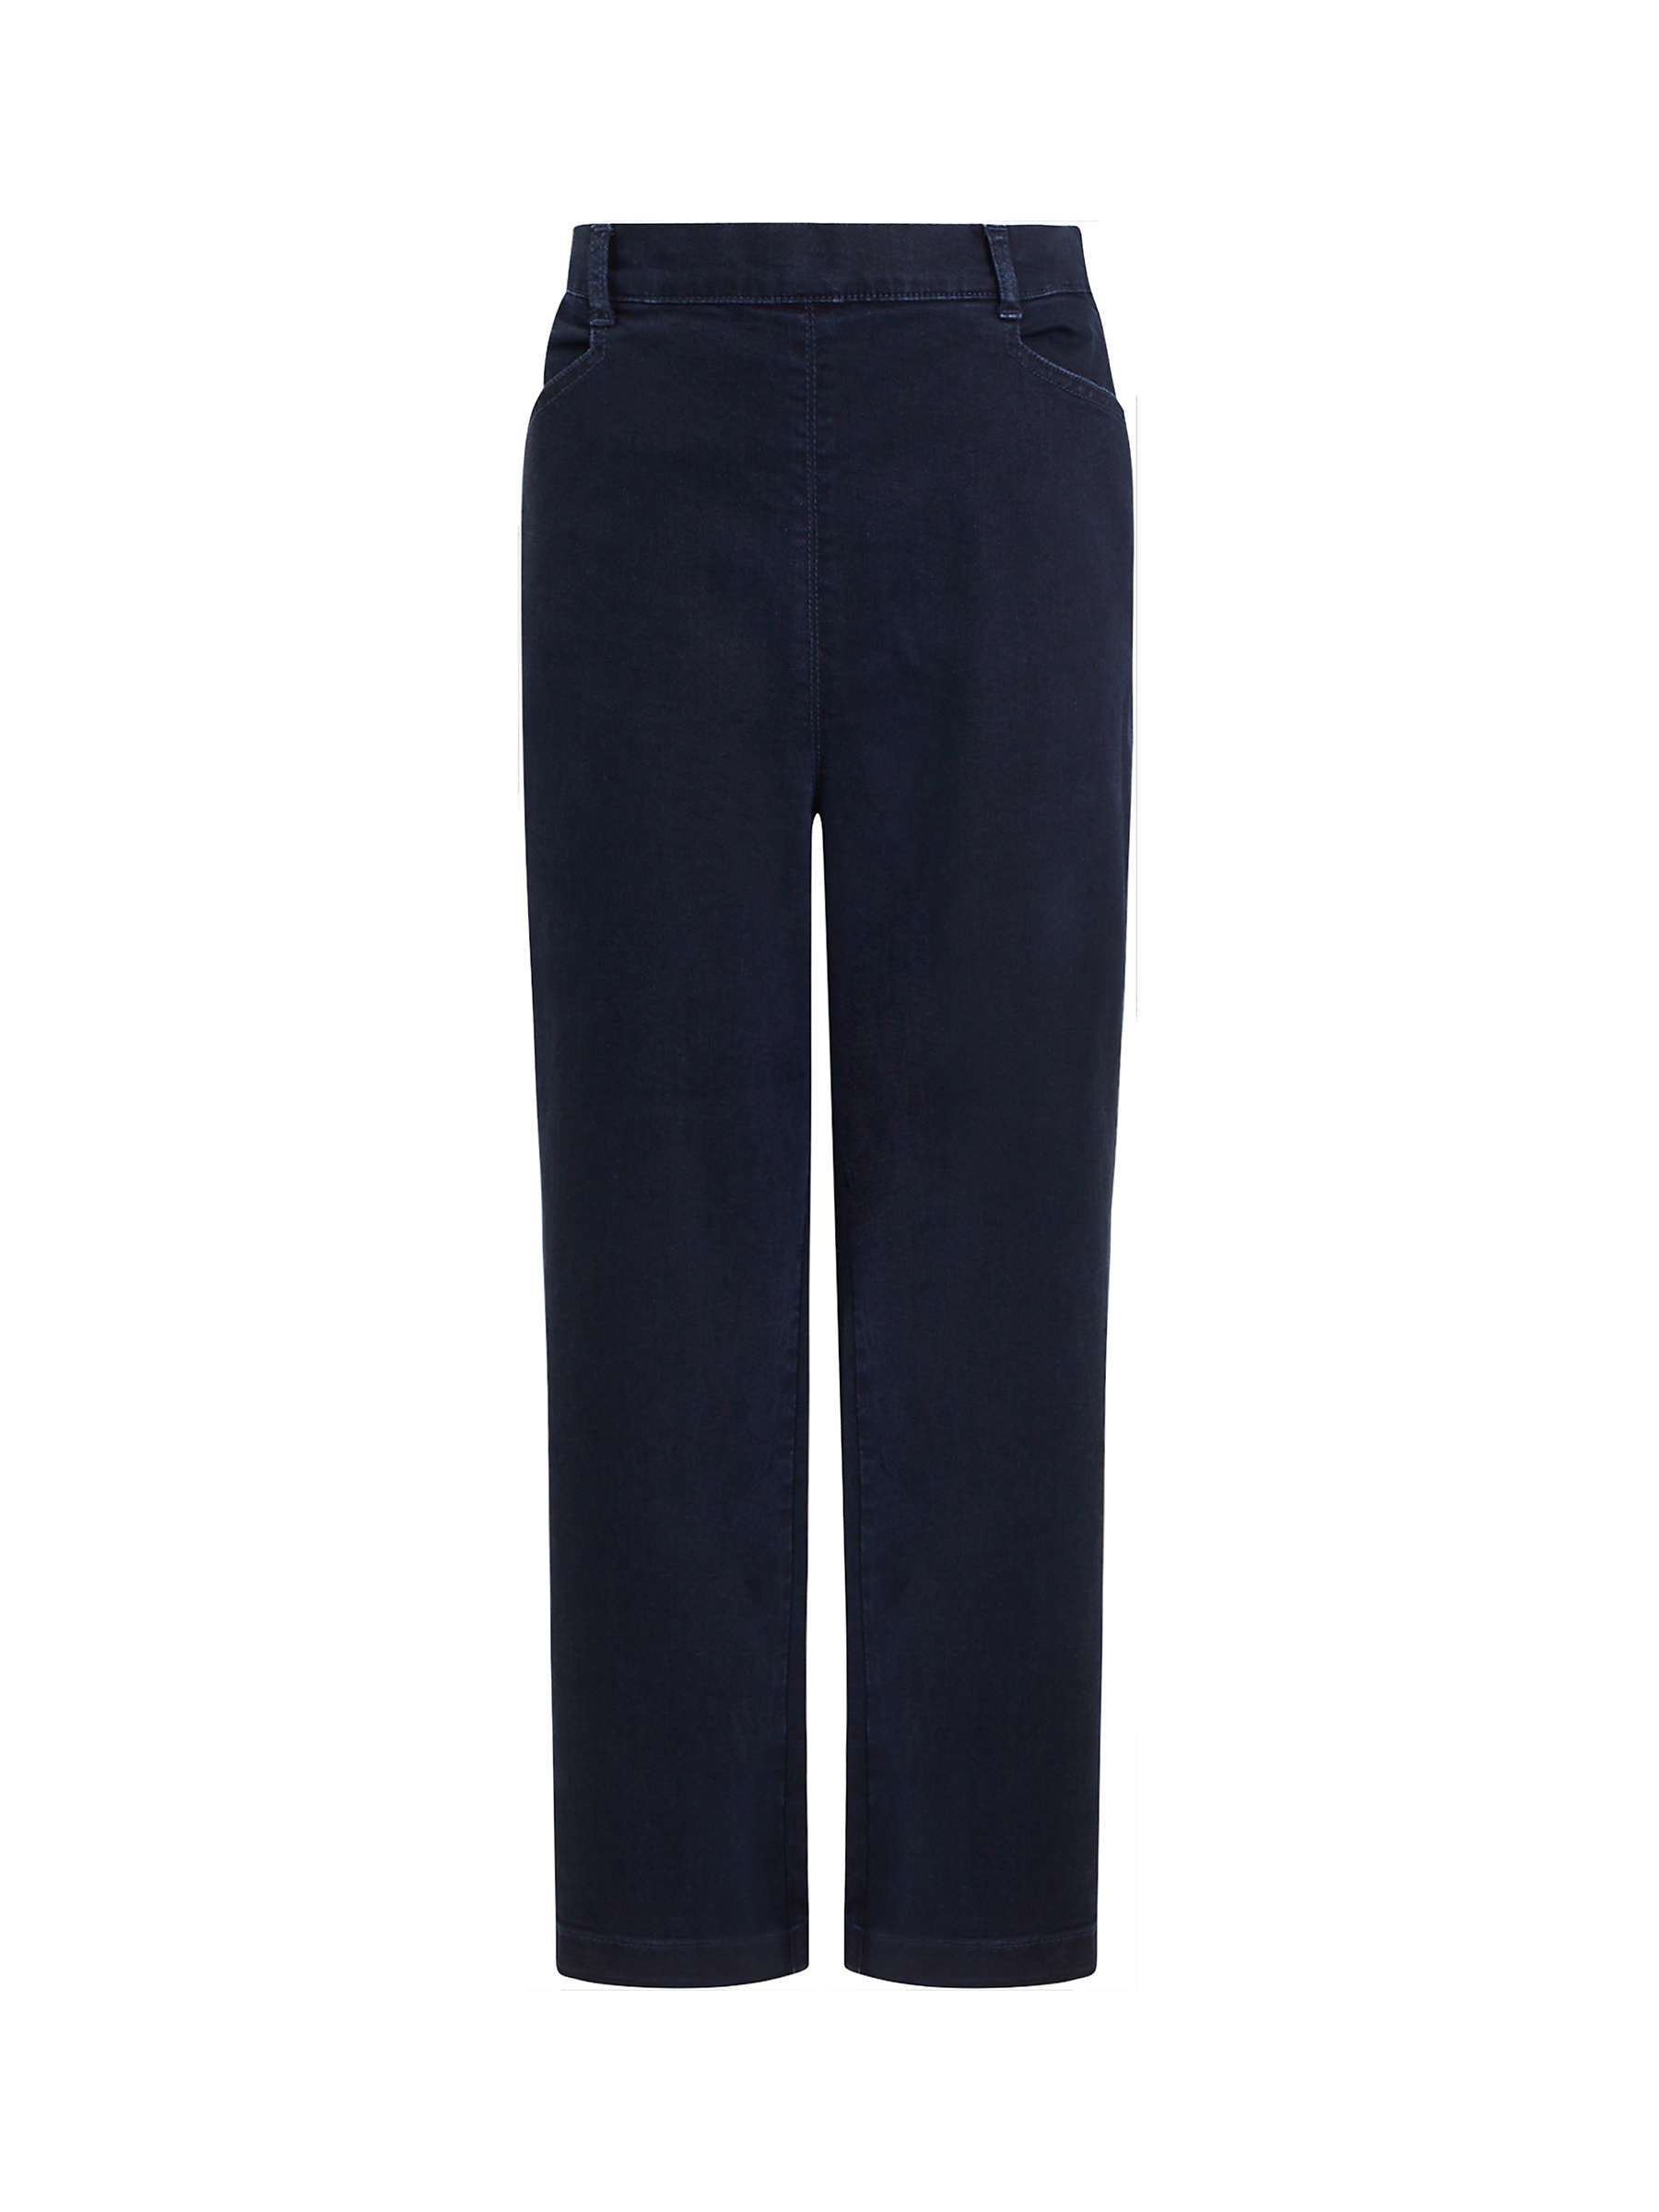 Buy Great Plains City Denim Trousers, Blue/Black Online at johnlewis.com